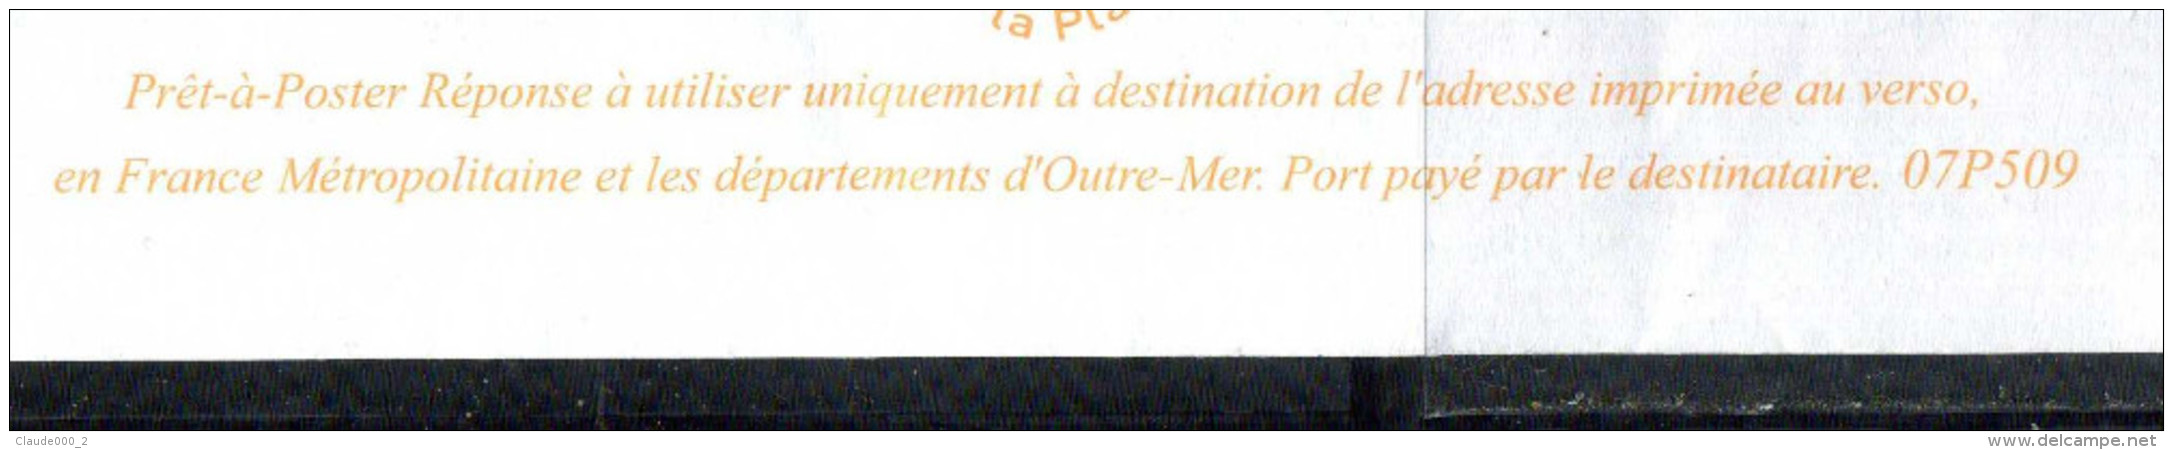 PAP Lamouche " SECOURS CATHOLIQUE RESEAU MONDIAL CARITAS " Port Payé Par 07P509 NEUF ** - Prêts-à-poster:Answer/Lamouche